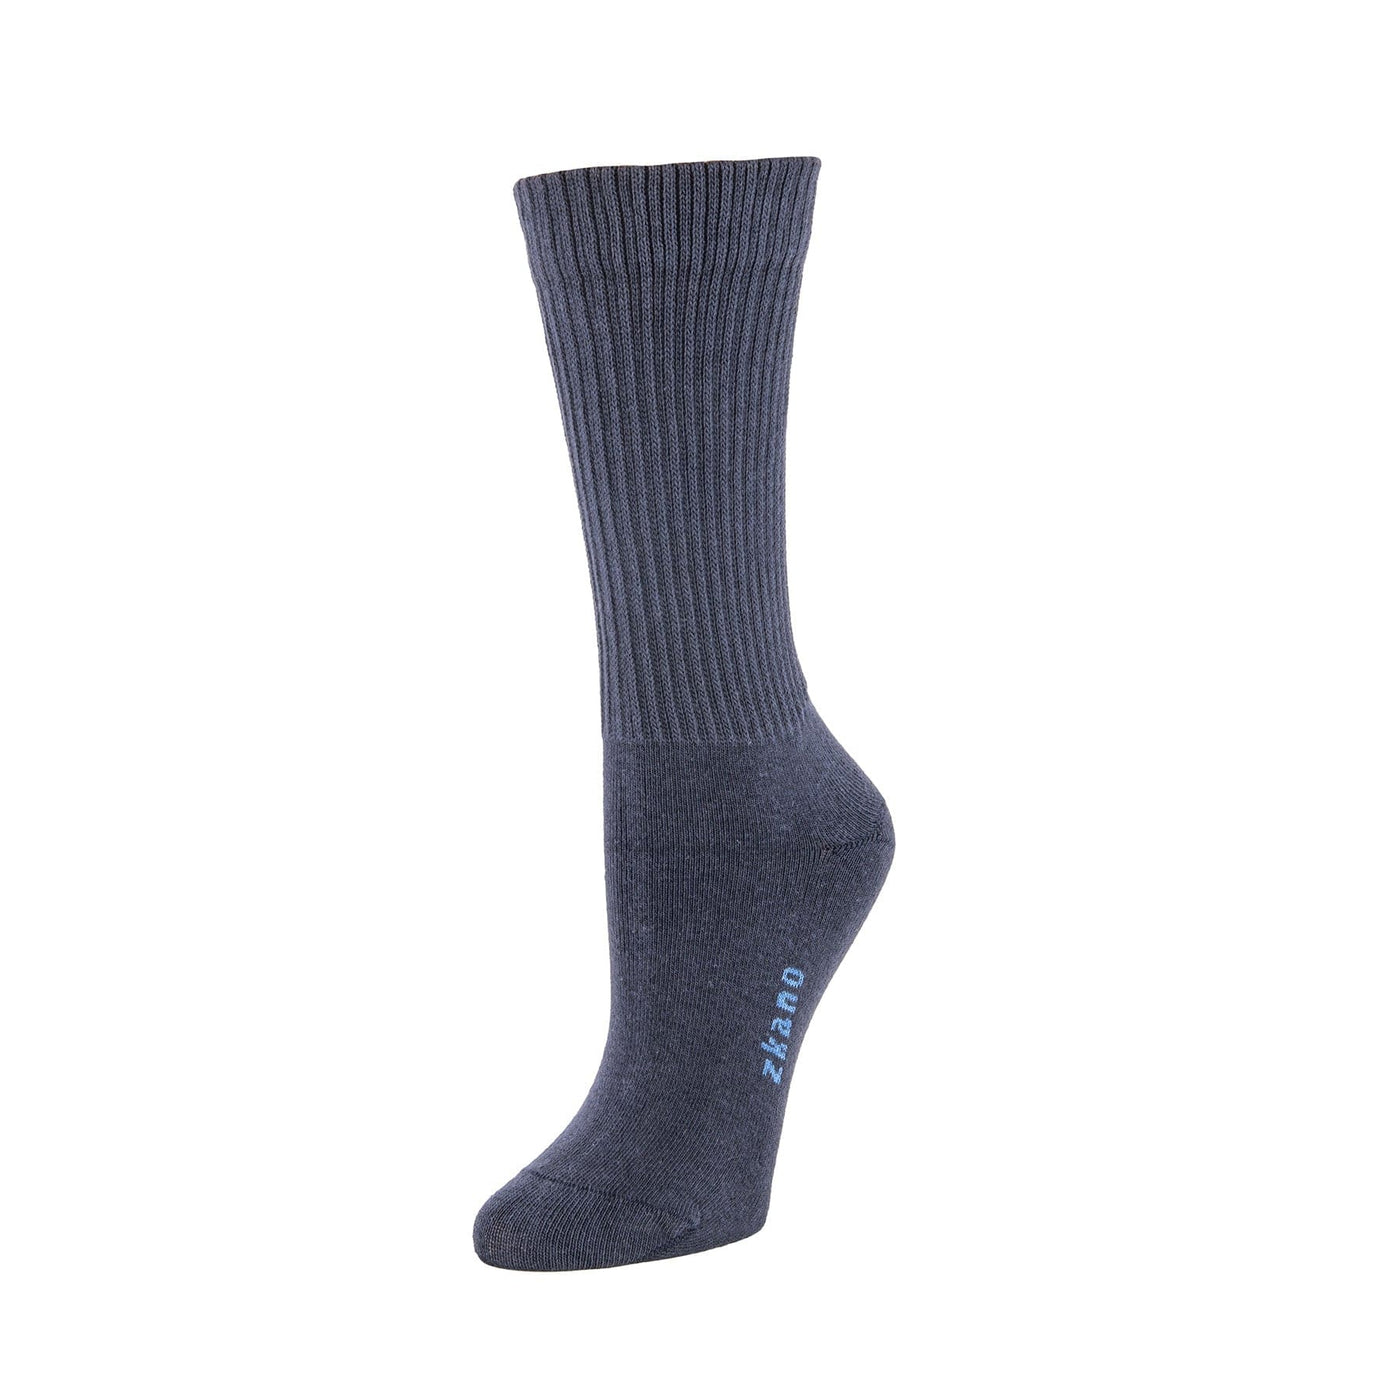 Zkano Crew Medium Rib Knit - Organic Cotton Crew Socks - Indigo organic-socks-made-in-usa